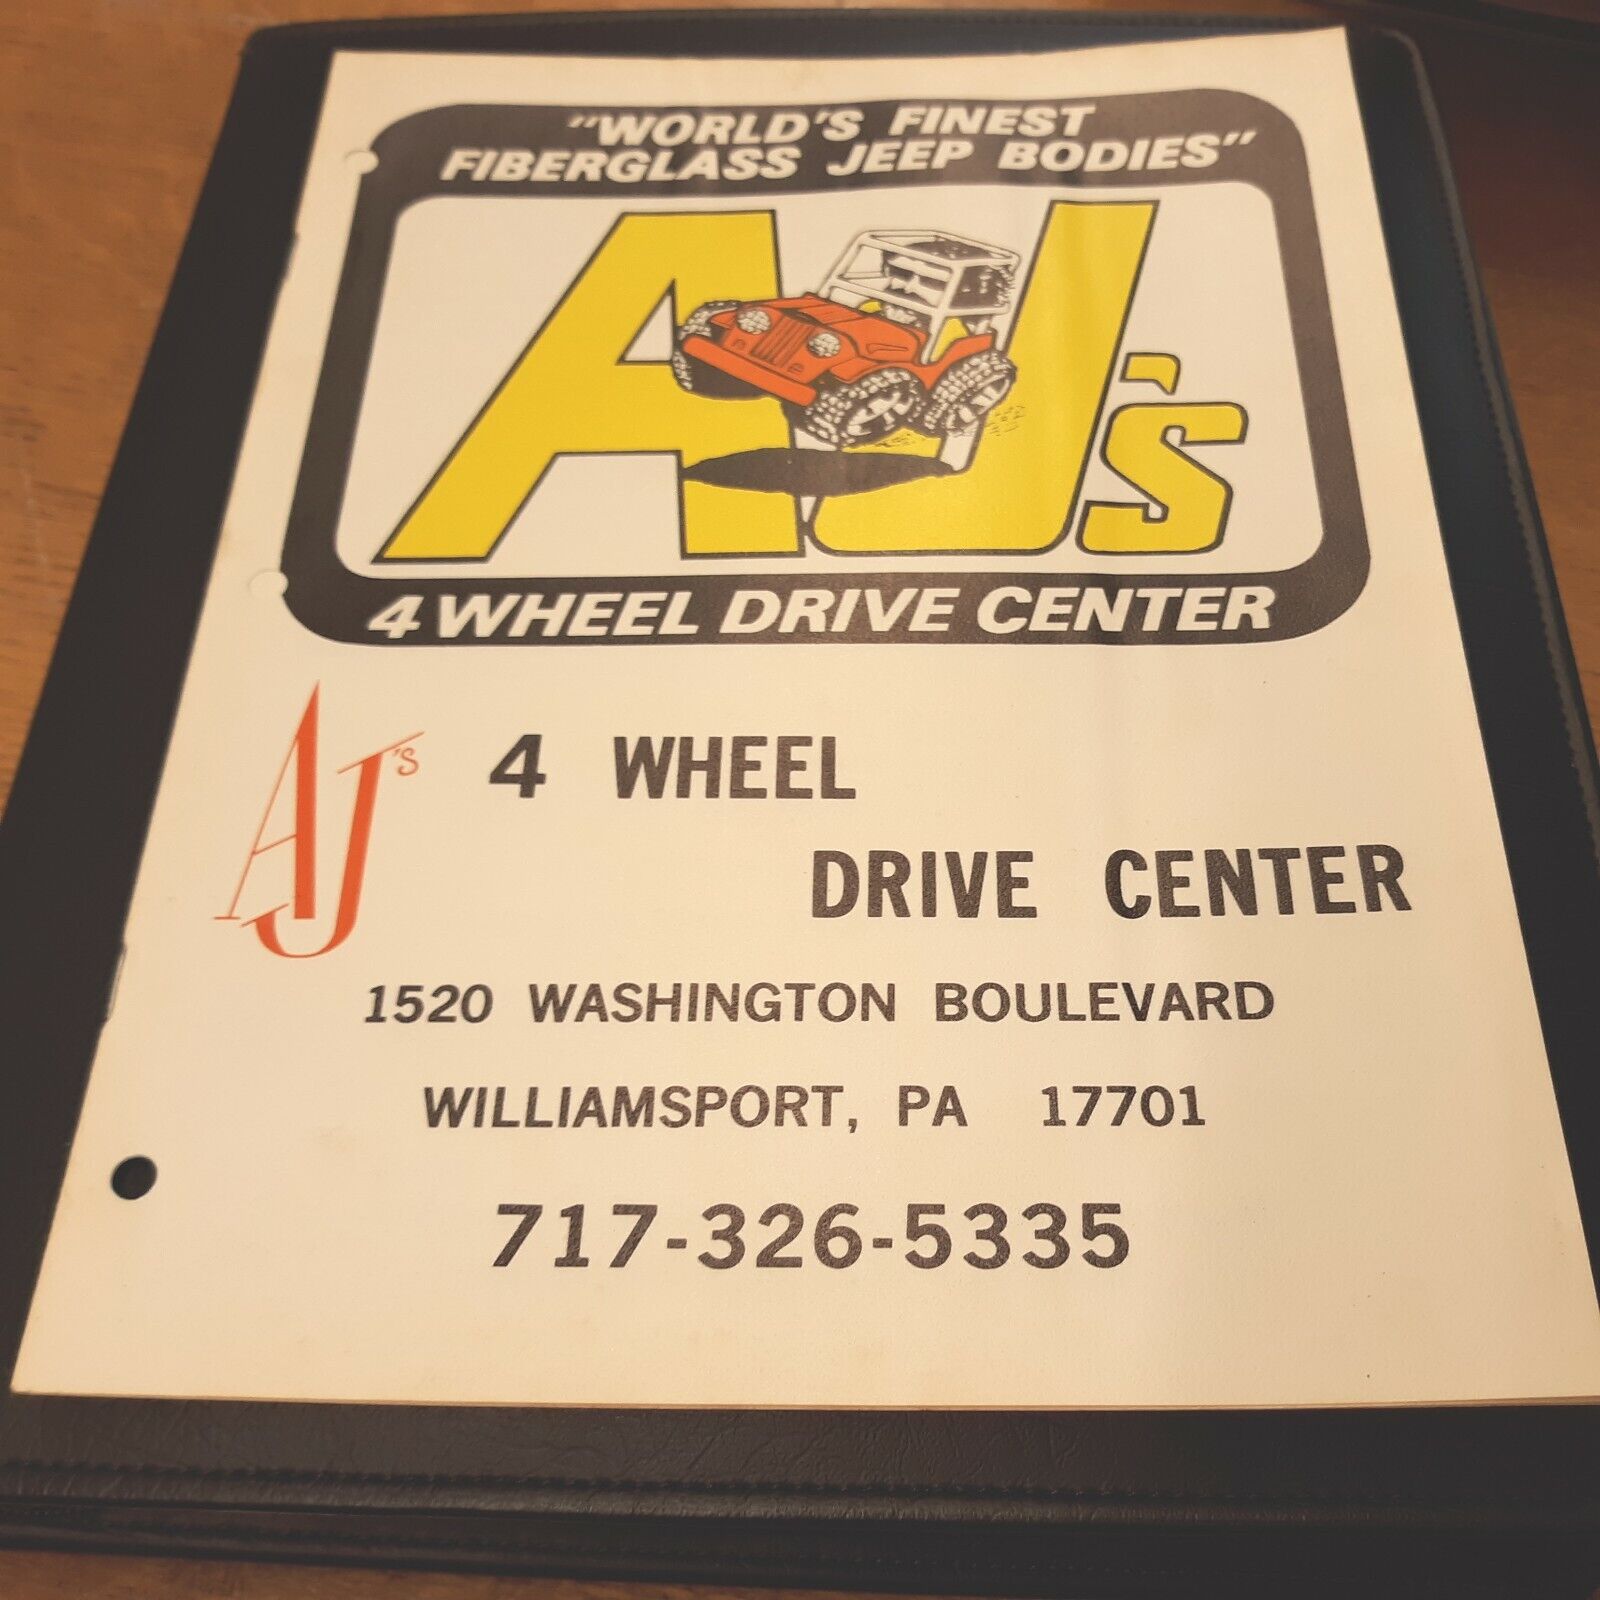 AJ's 4 Wheel Drive Center Fiberglass Jeep Bodies Williamsport PA 8.5x11 Brochure